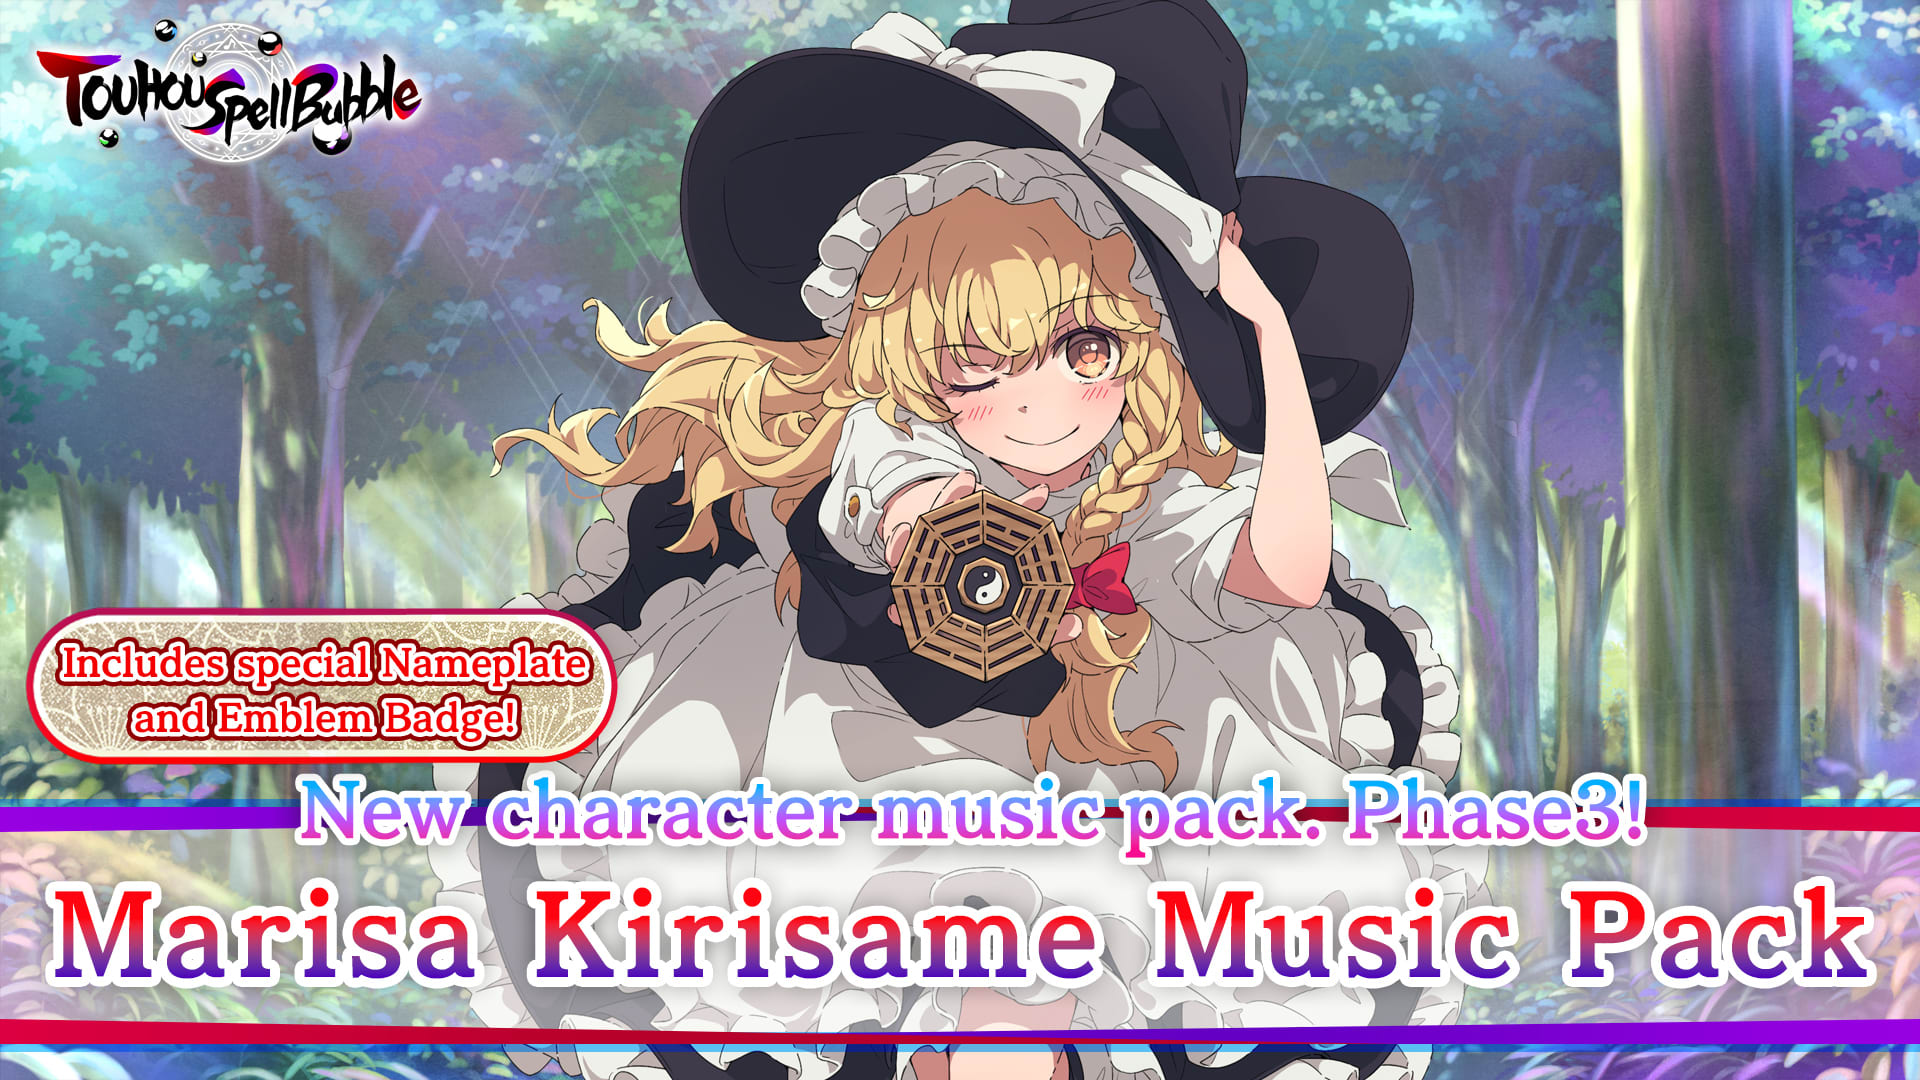 Marisa Kirisame Music Pack